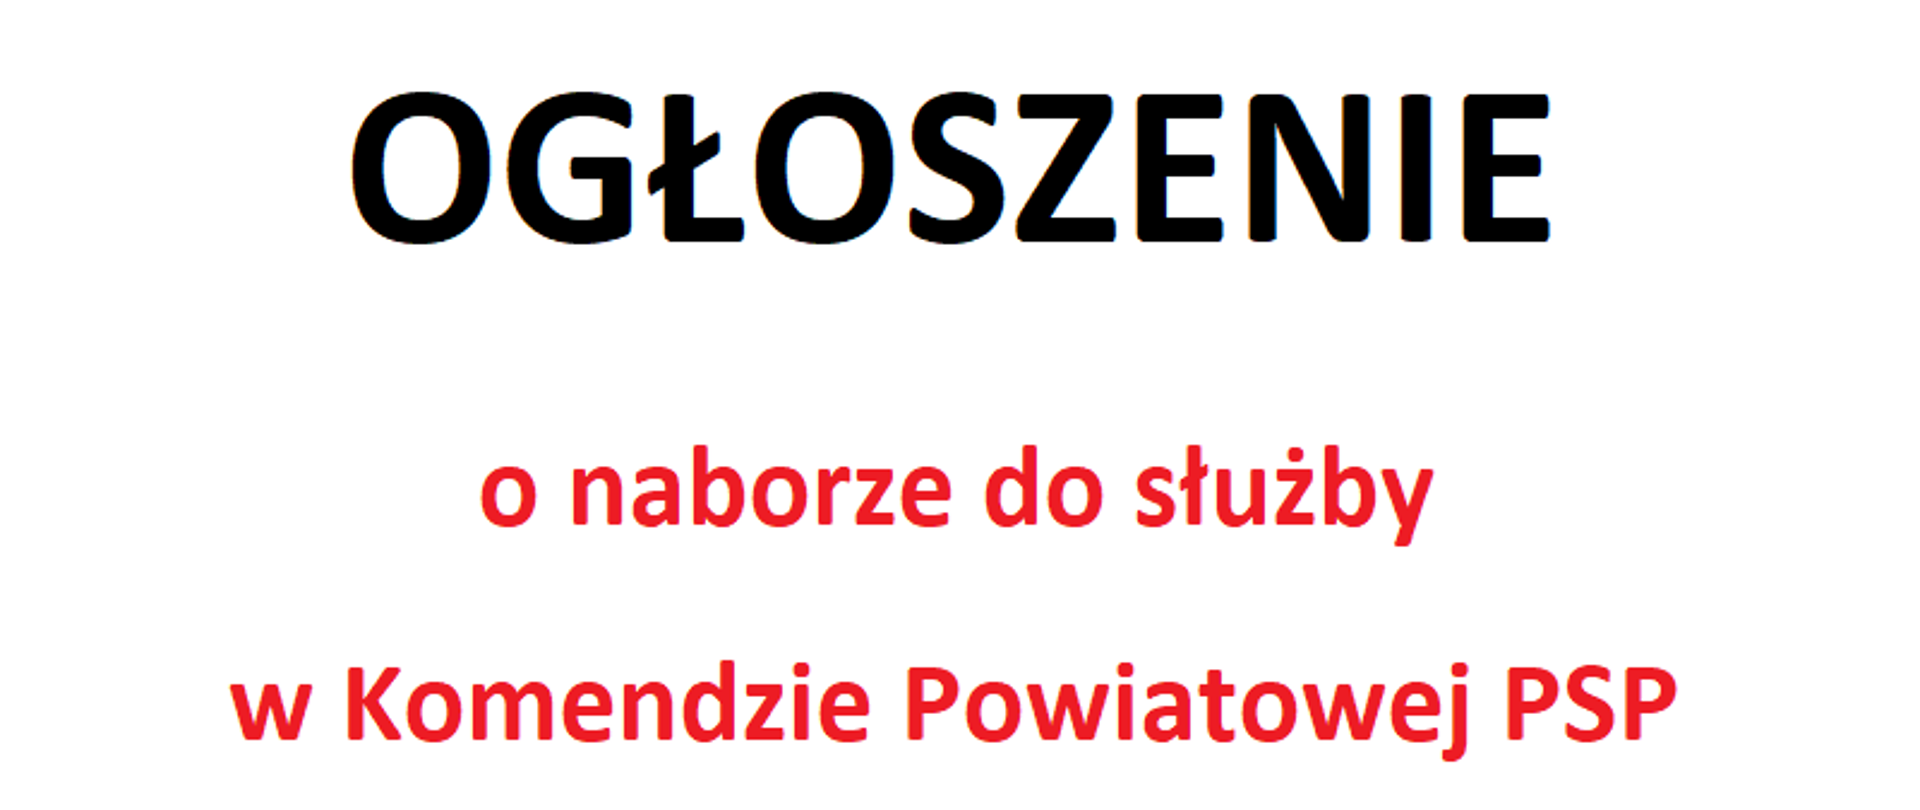 Grafika z napisem "Ogłoszenie o naborze w Komendzie Powiatowej PSP w Kolnie"